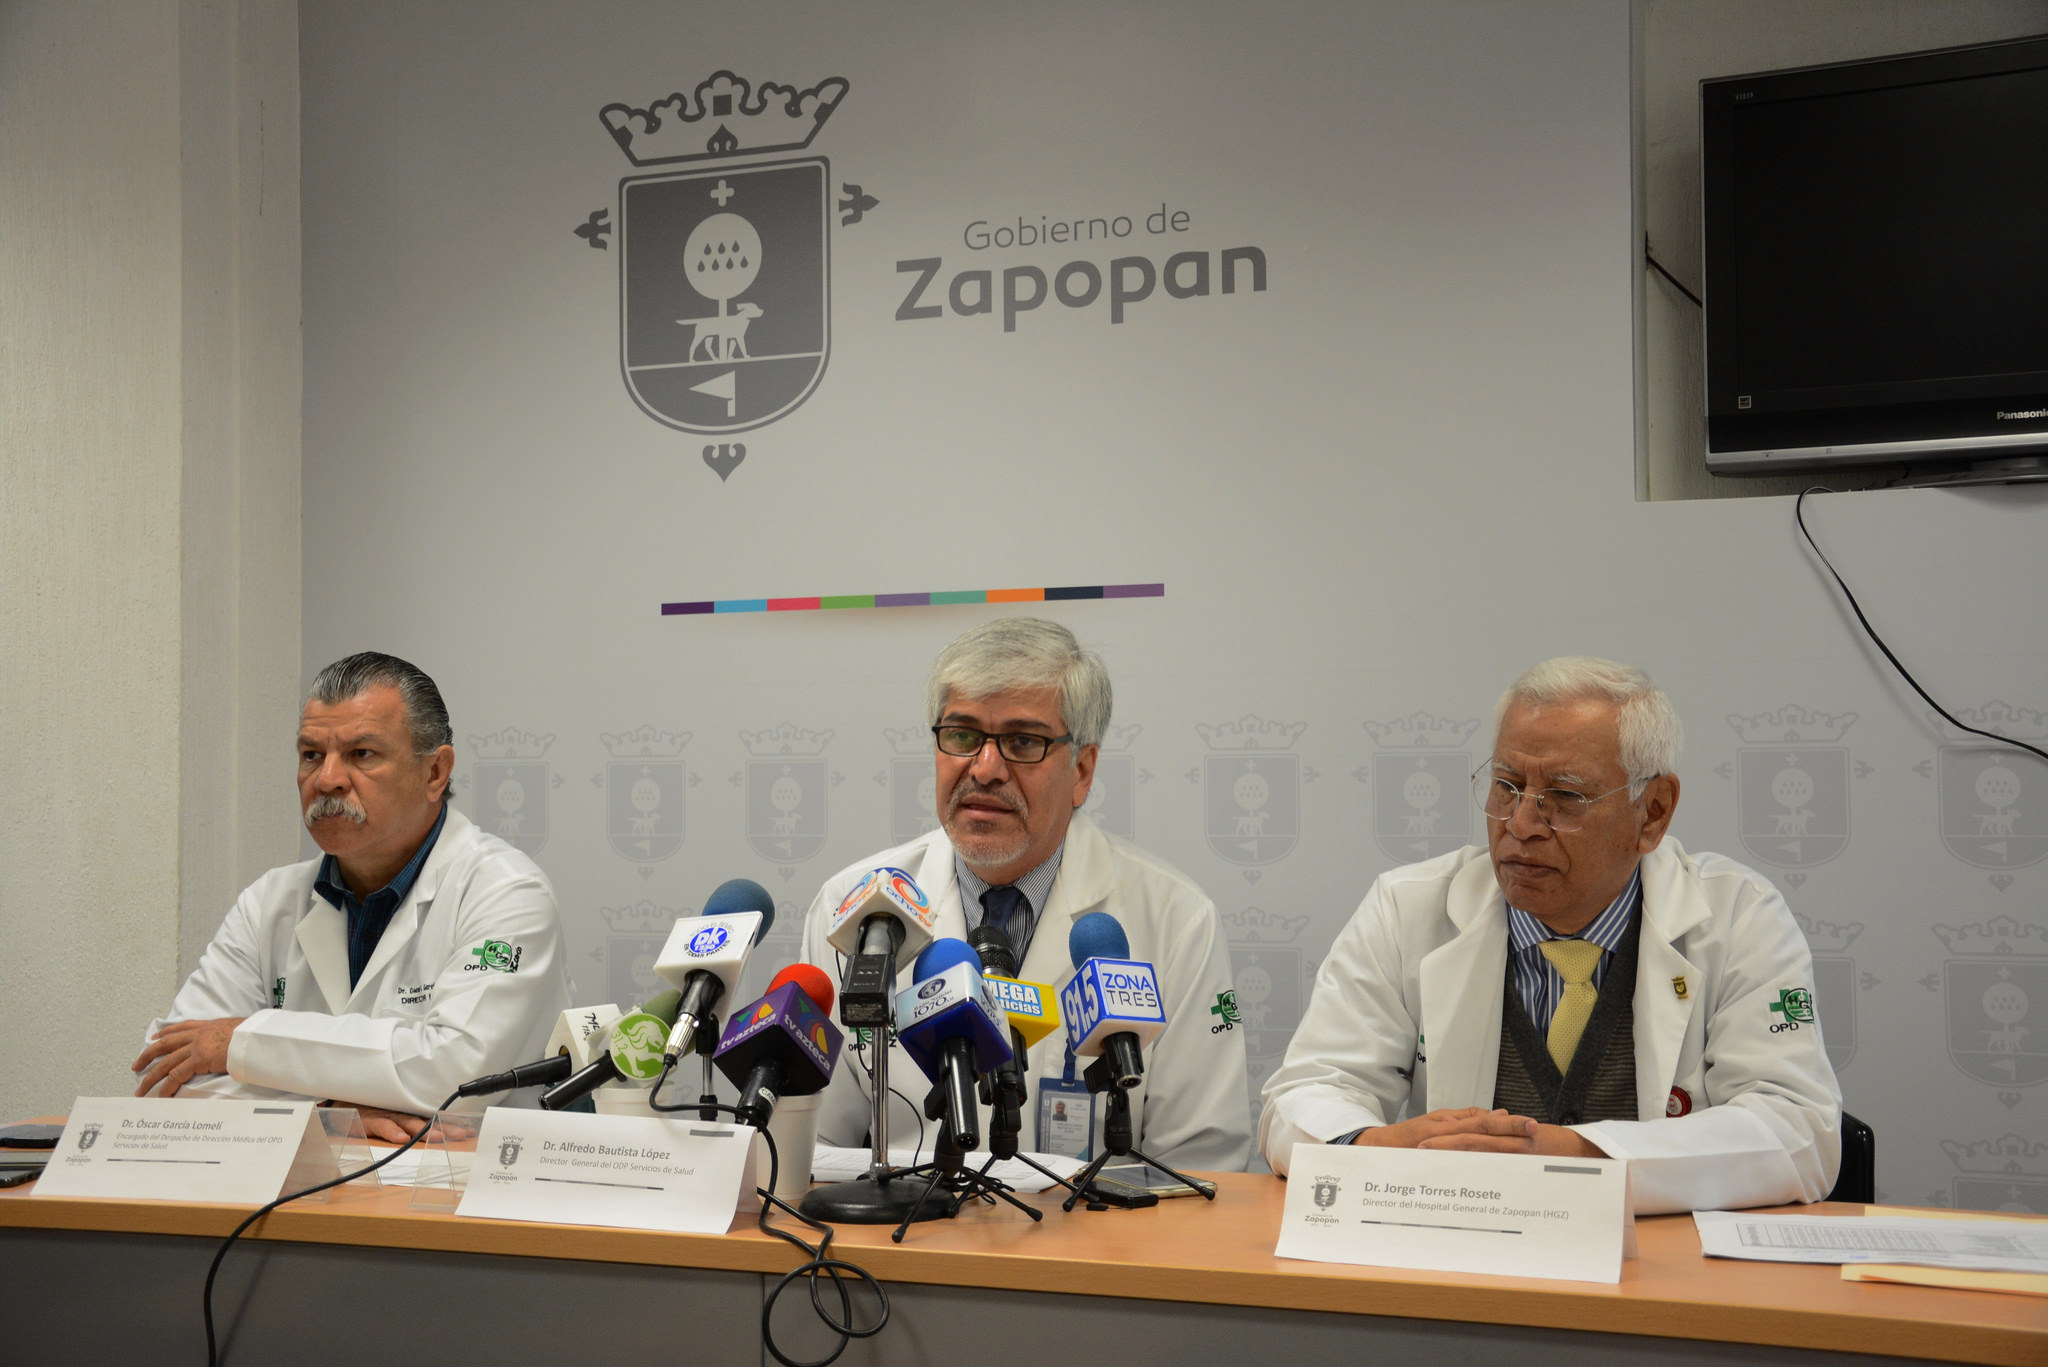 El Hospital General de Zapopan presenta avances en capacitación y equipamiento, en el marco del 70°aniversario del OPD Servicios de Salud